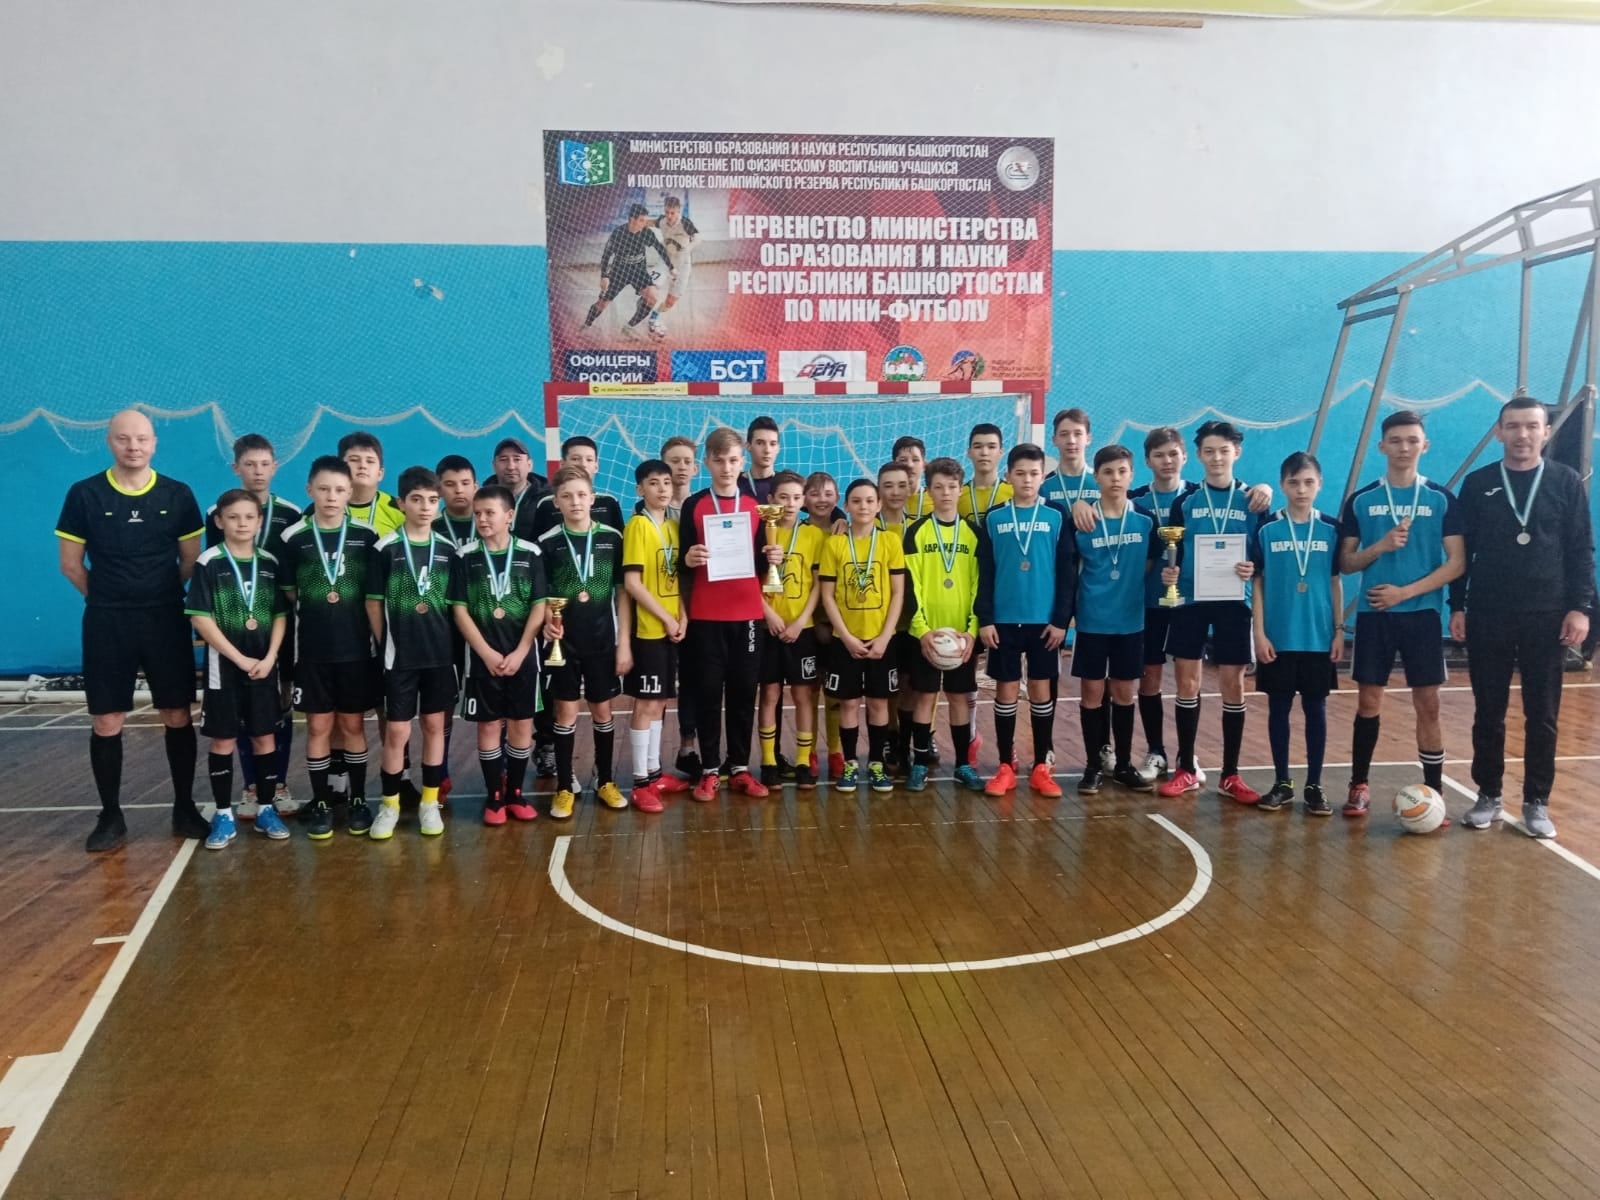 Юные футболисты ДЮСШ стали призерами спартакиады школьников РБ по мини-футболу